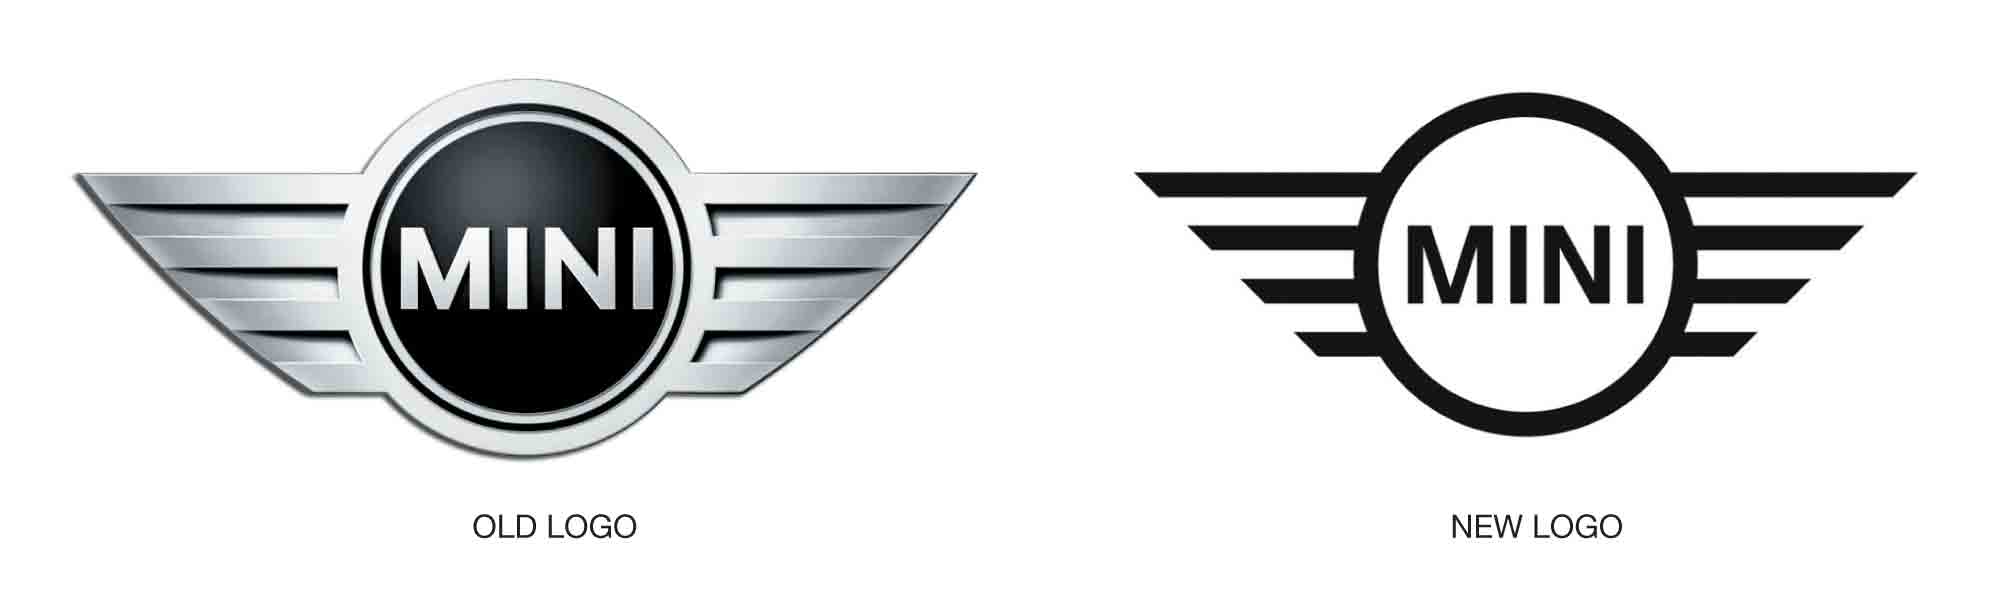 Adaptive logos 